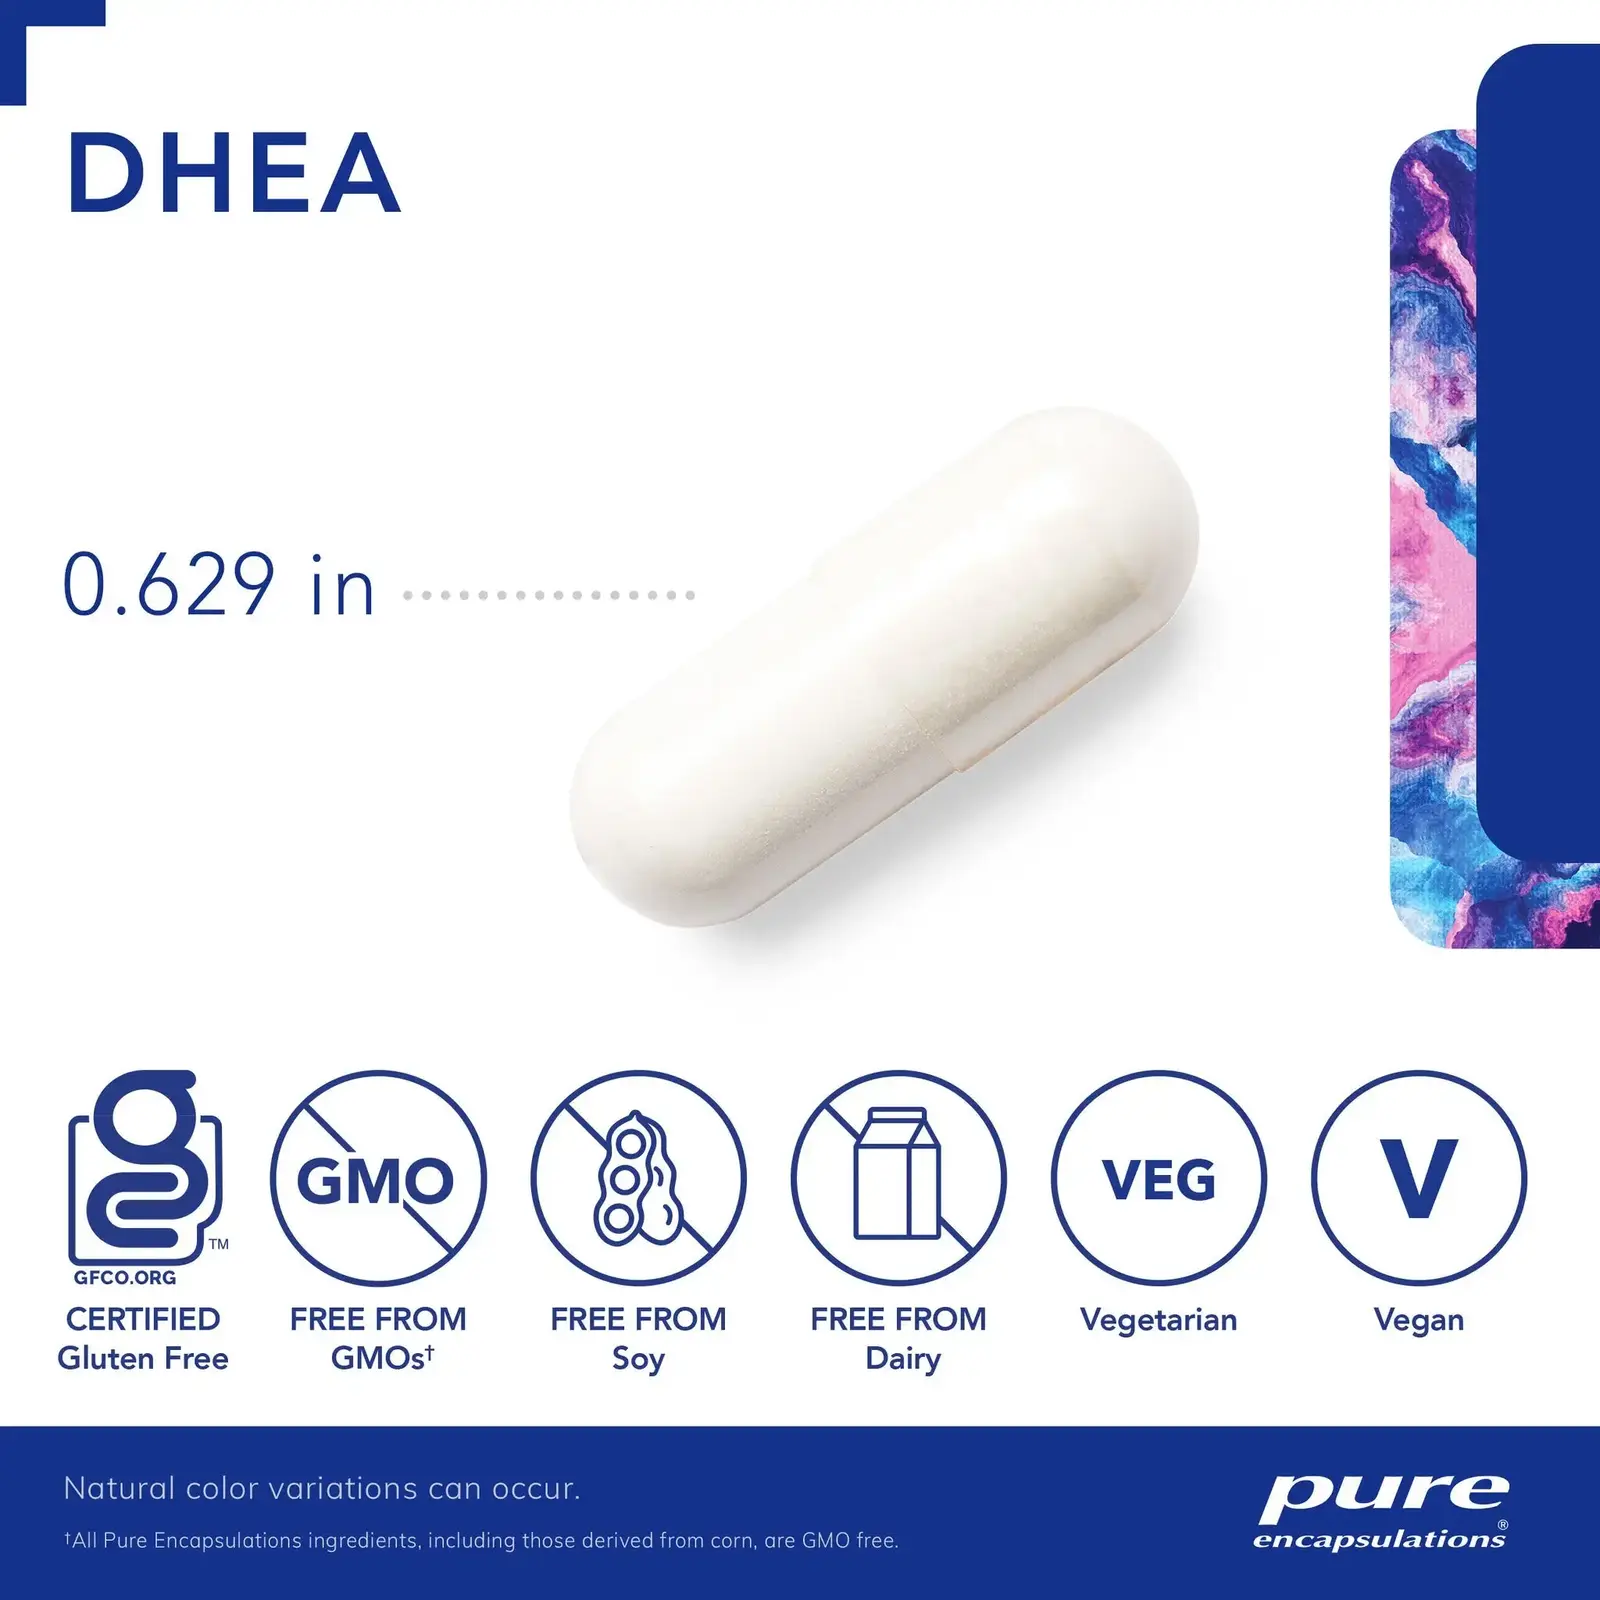 DHEA 5 mg.